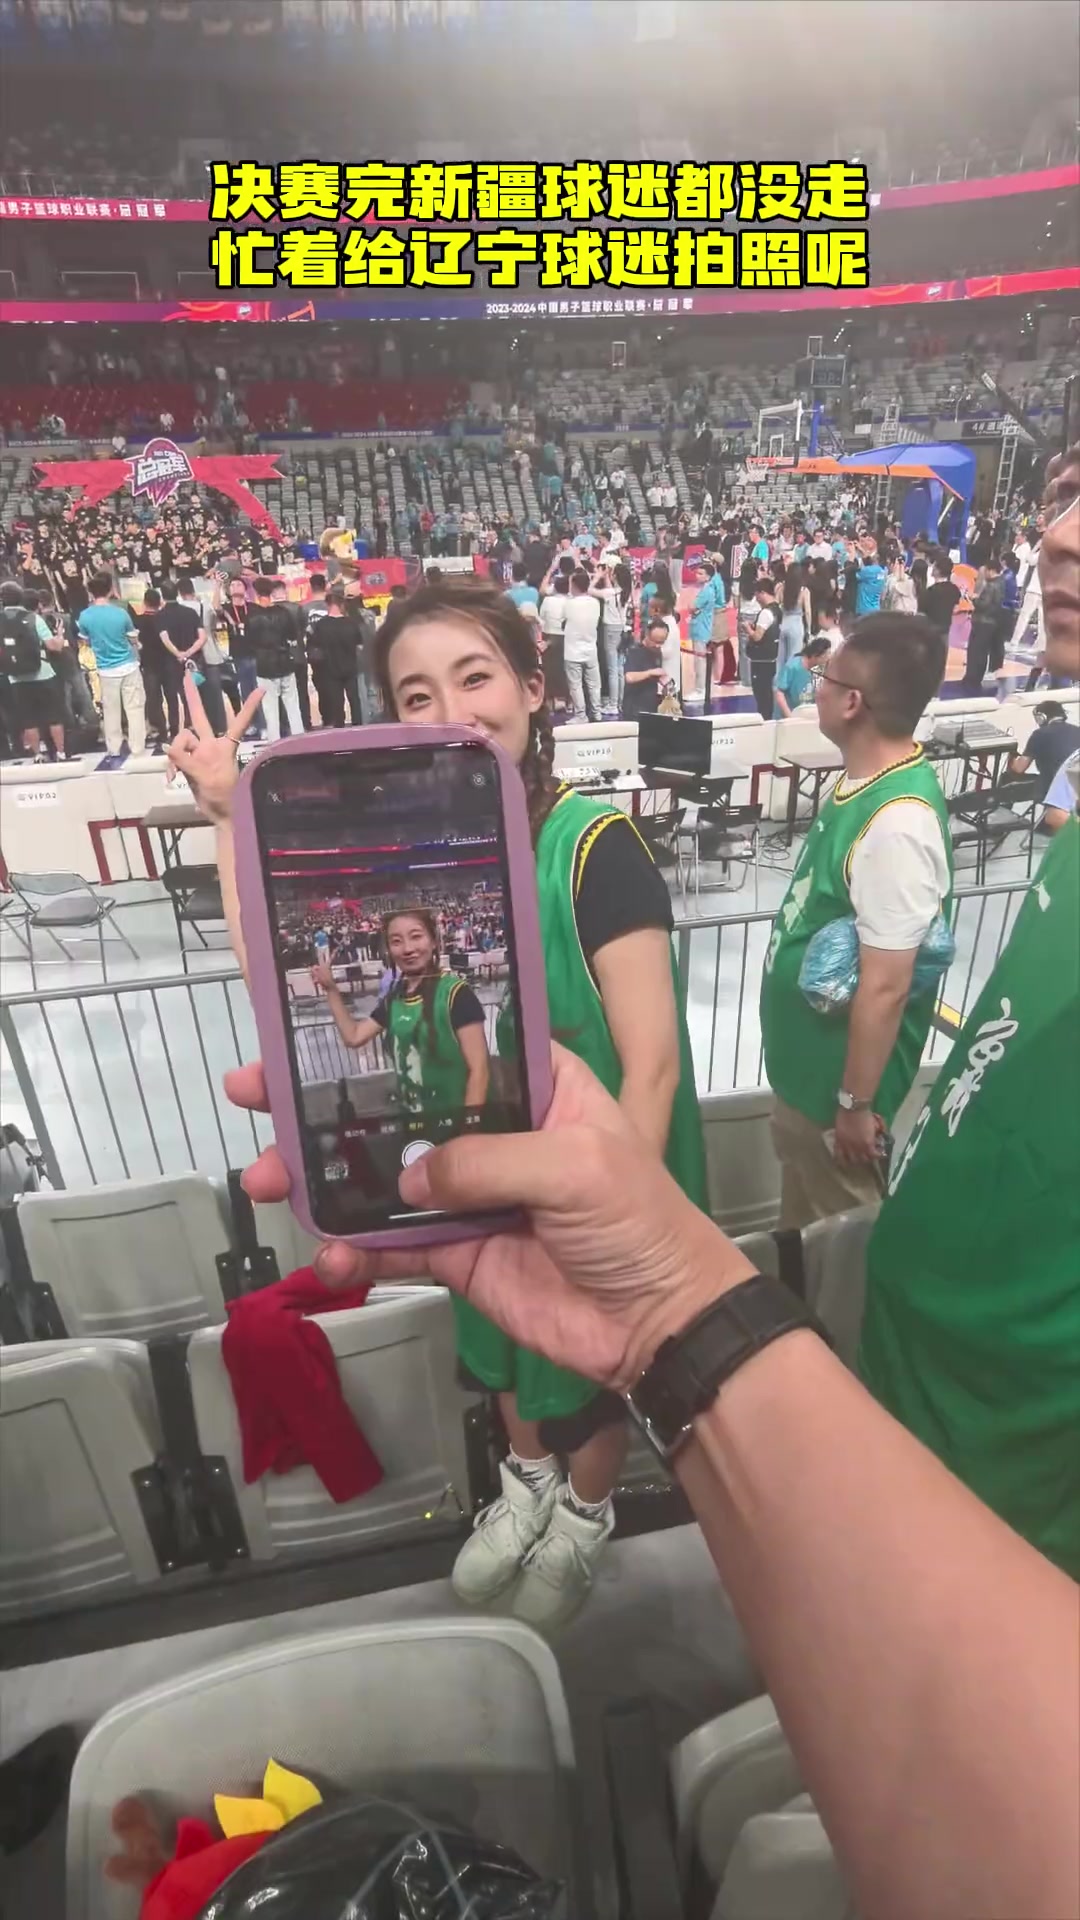 决赛后没走的新疆球迷 忙着给辽宁女球迷拍照呢